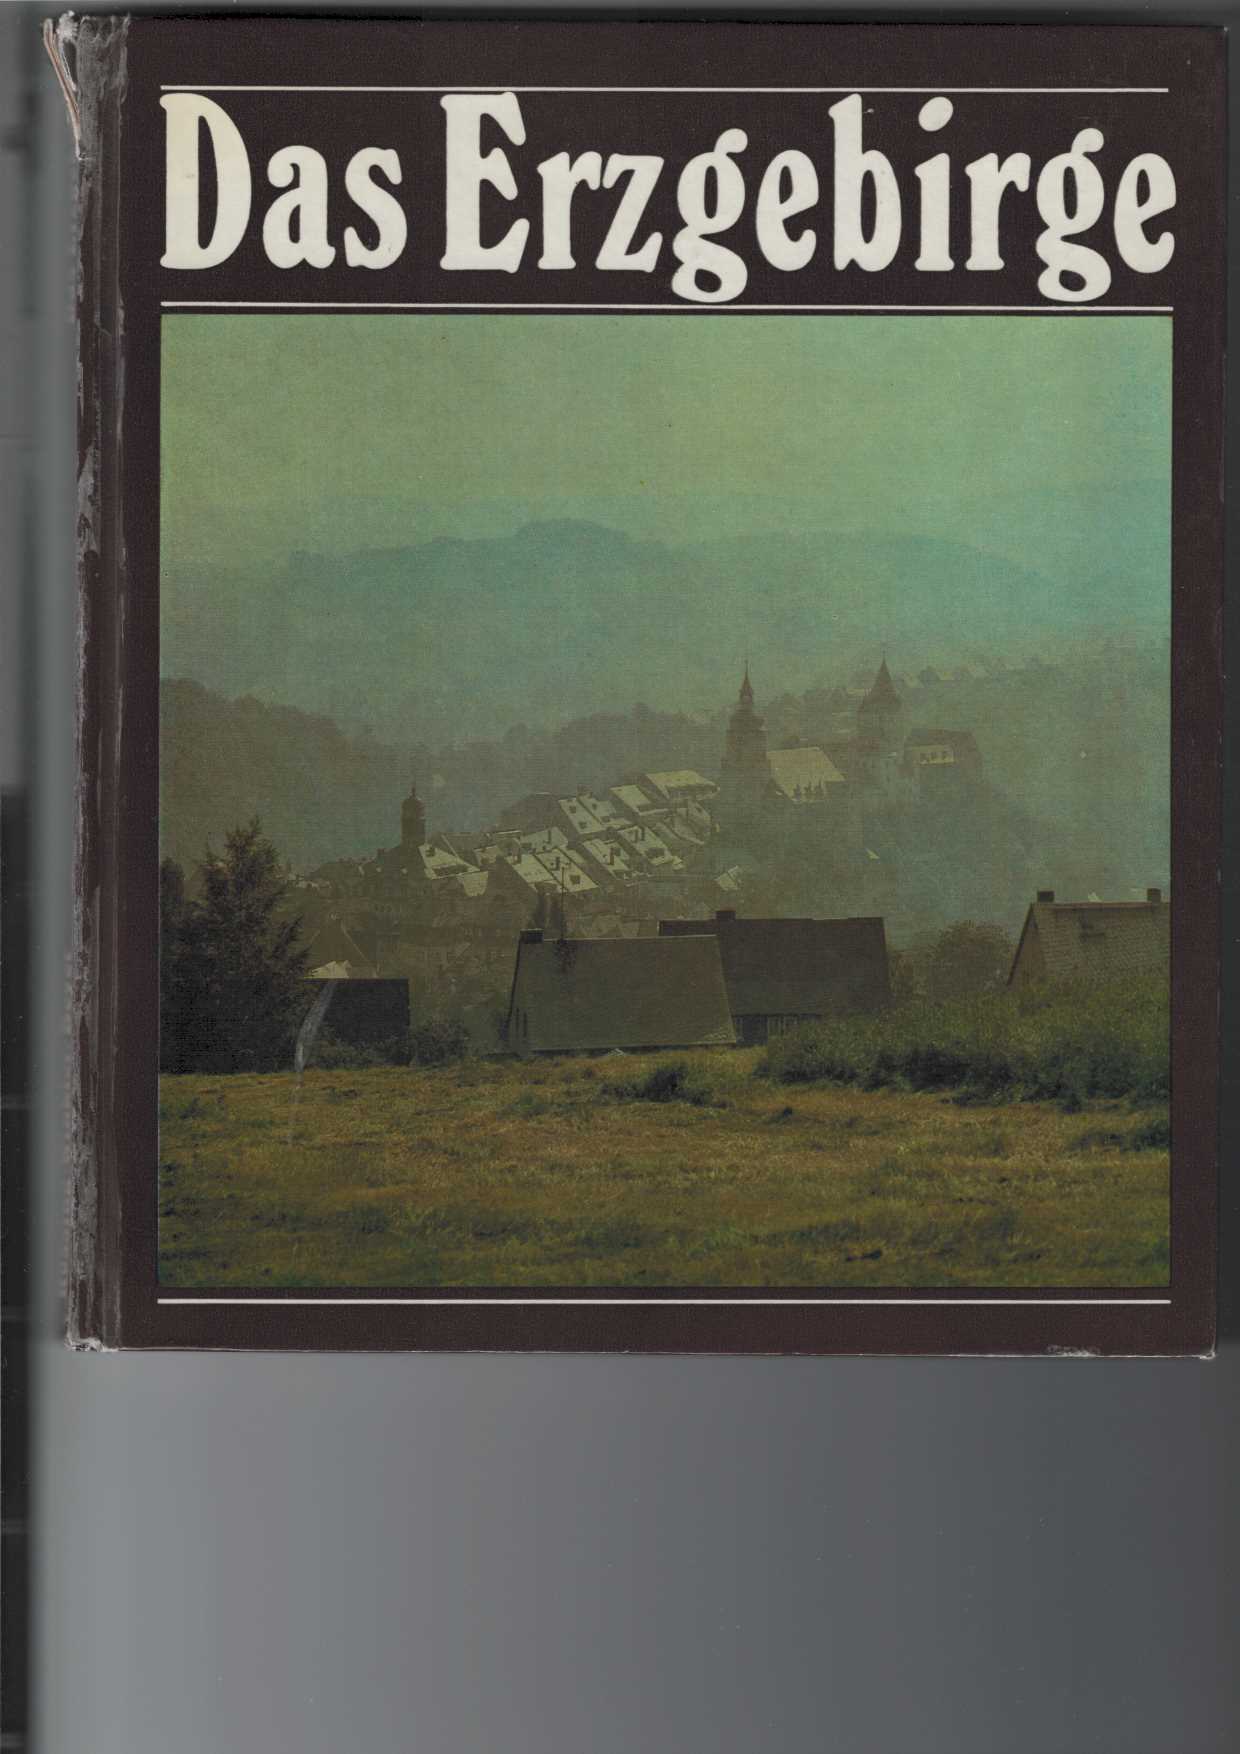 Rssing-Winkler und Paul Beyer:  Das Erzgebirge. 